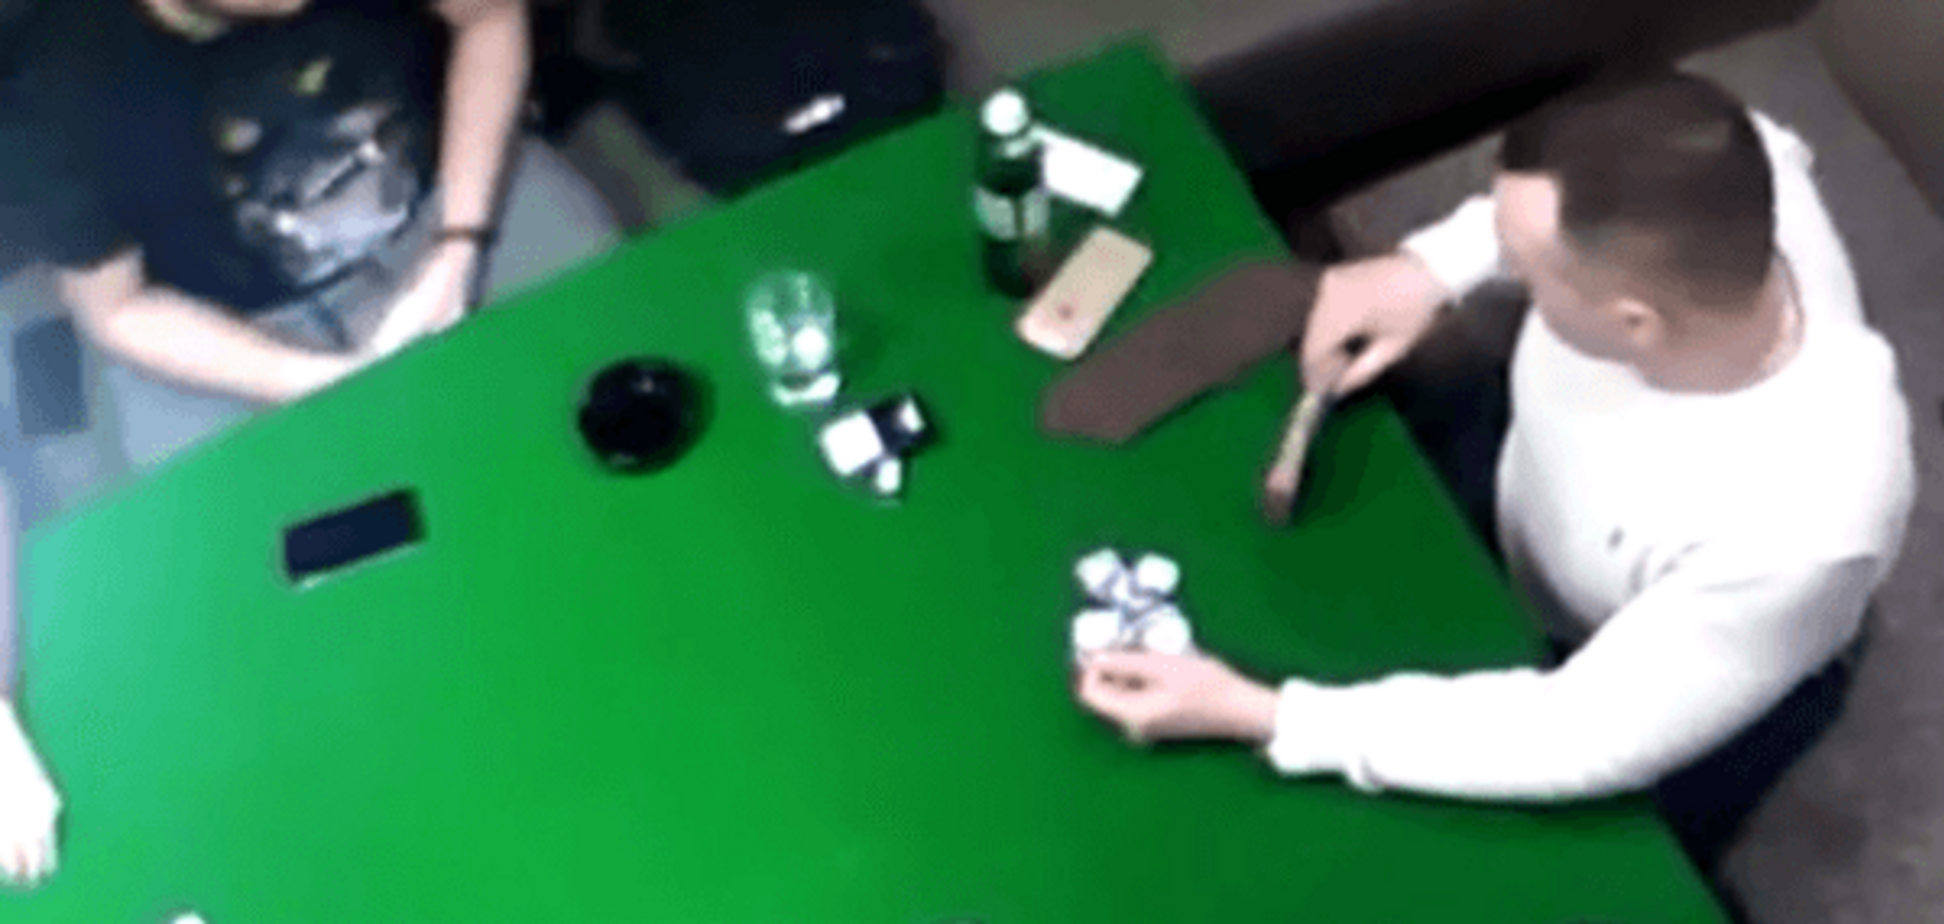 Появилось видео с якобы сыном Авакова, который играет в покер и курит траву